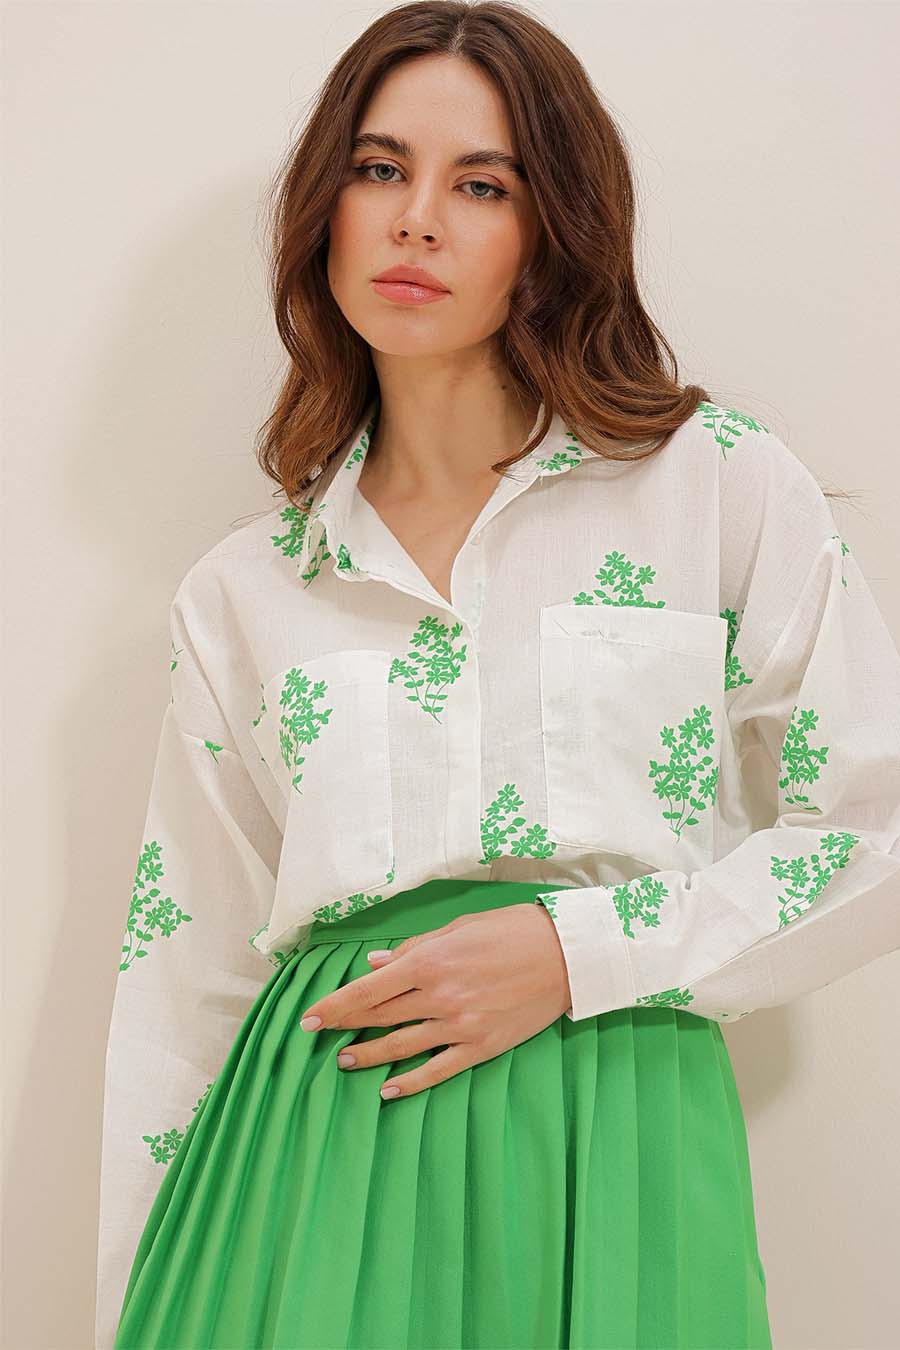 Γυναικείο πουκάμισο Darana, Λευκό/Πράσινο 3